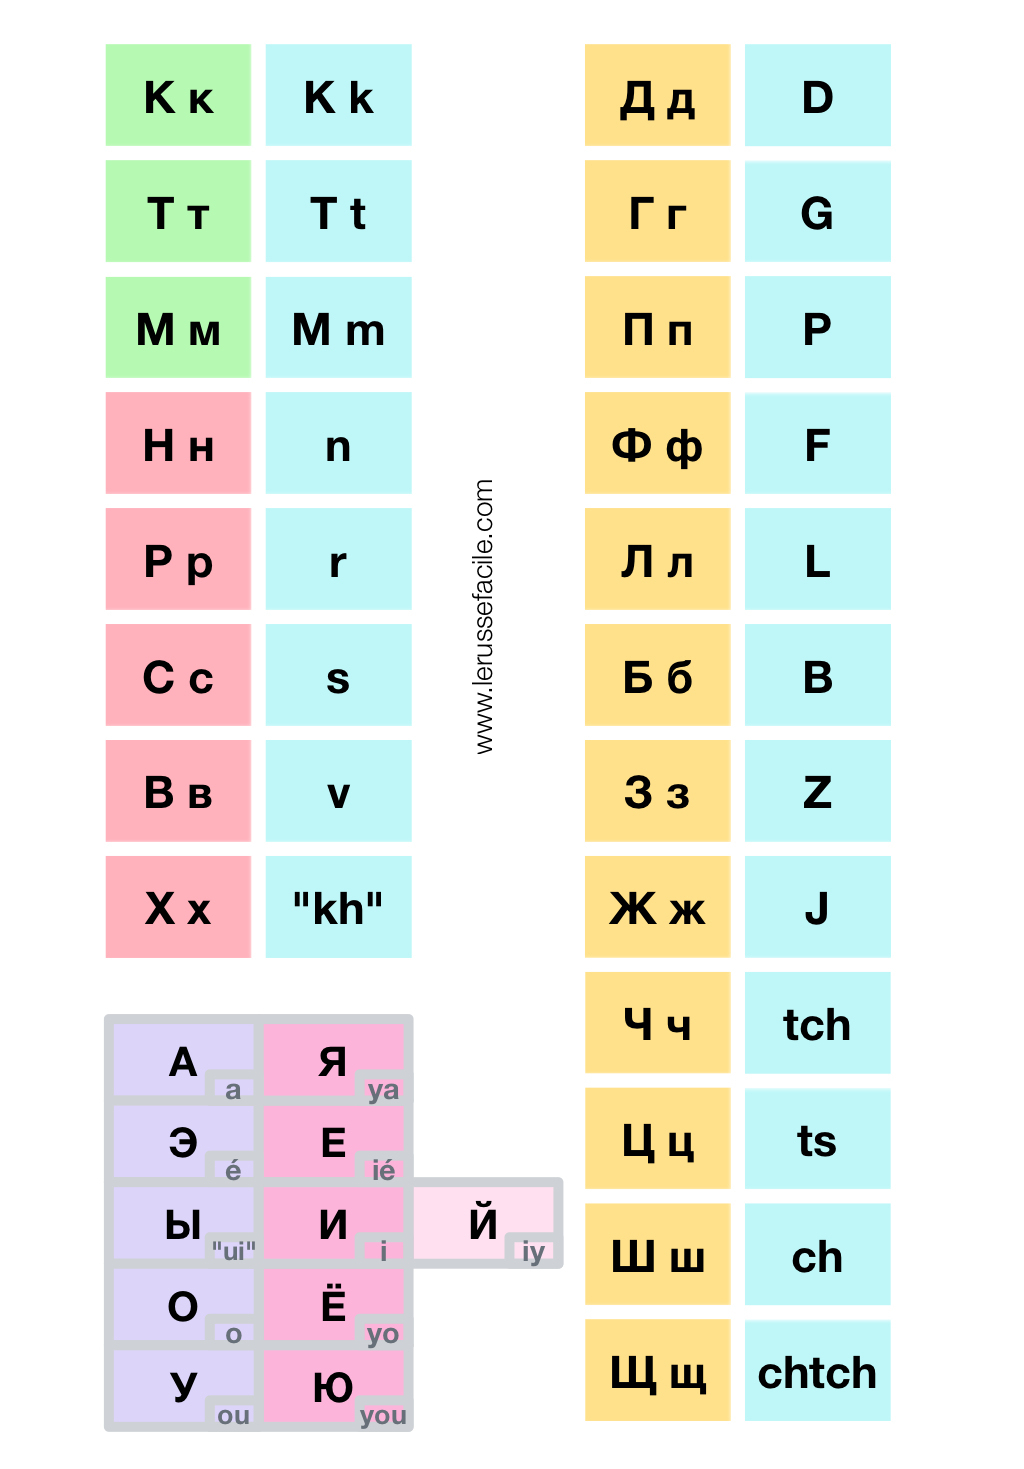 Apprendre L'alphabet Cyrillique Facilement | Le Russe Facile intérieur Apprendre Alphabet Francais